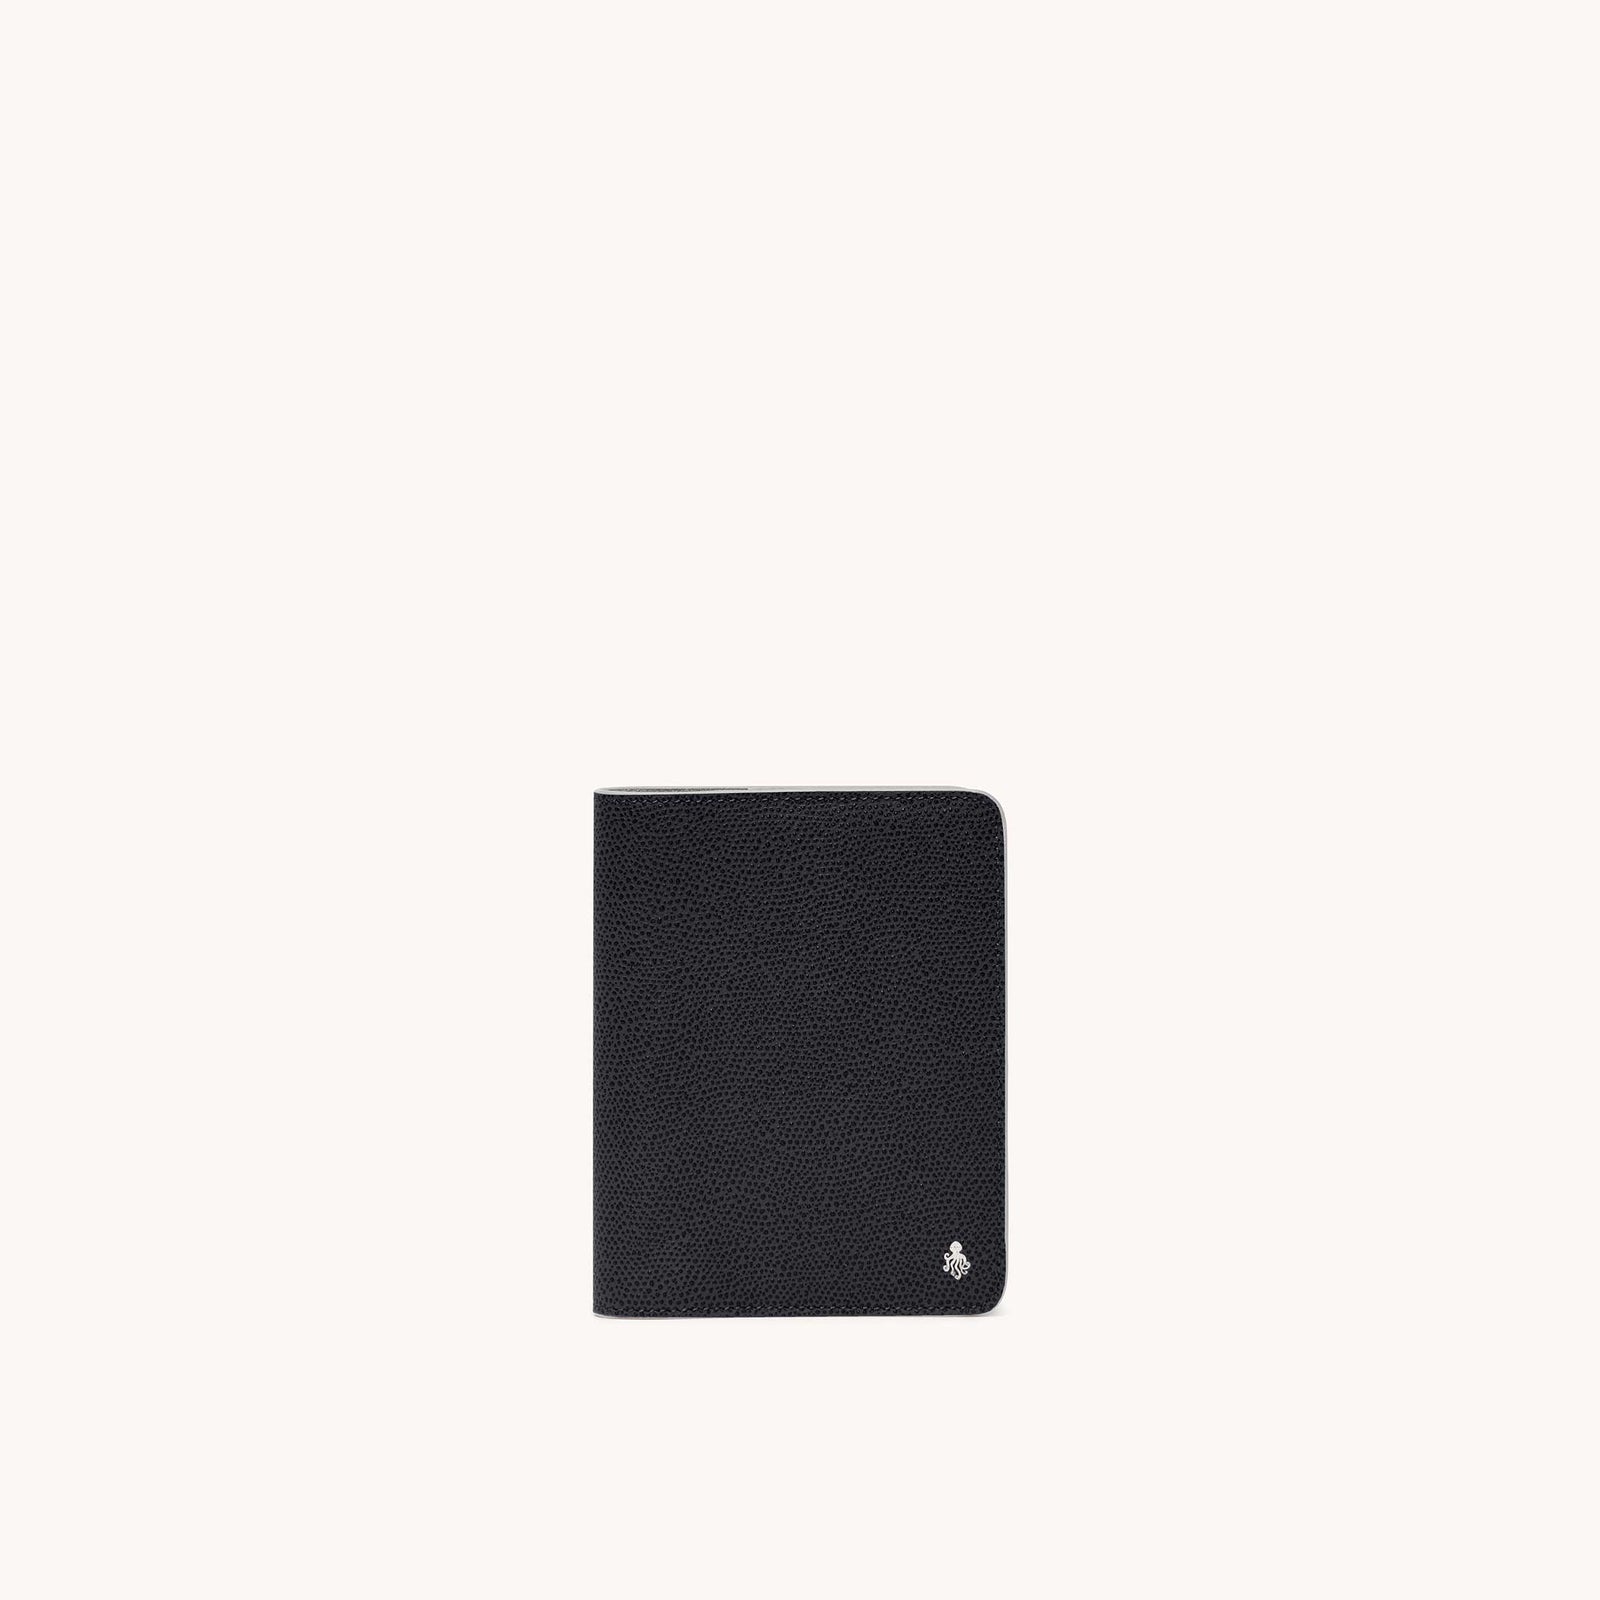 Louis Vuitton Pince Card Holder Reviewer